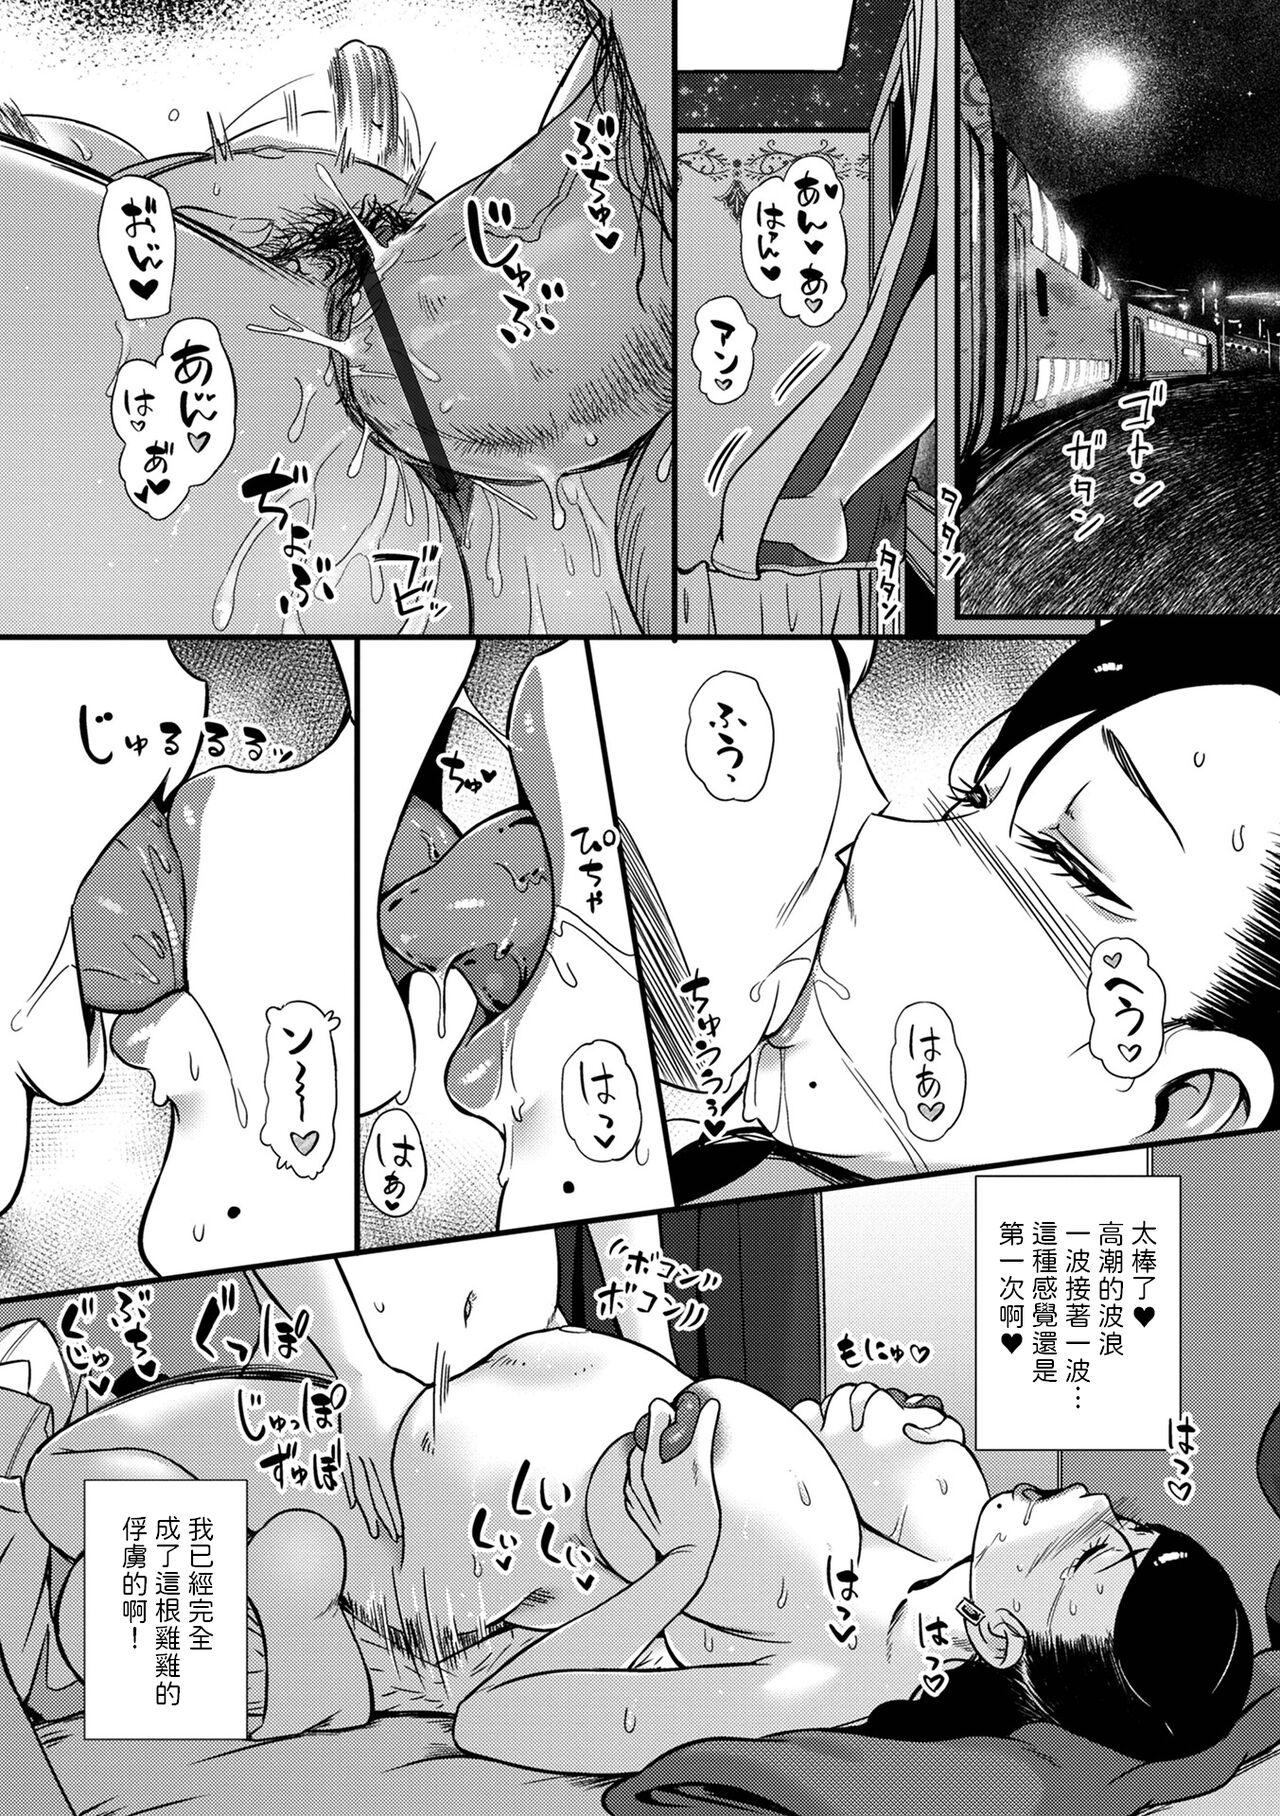 [YOSHITORA]  妻だけが居るはずの部屋  (コミック刺激的 SQUIRT！！ Vol.31)  中文翻譯 13